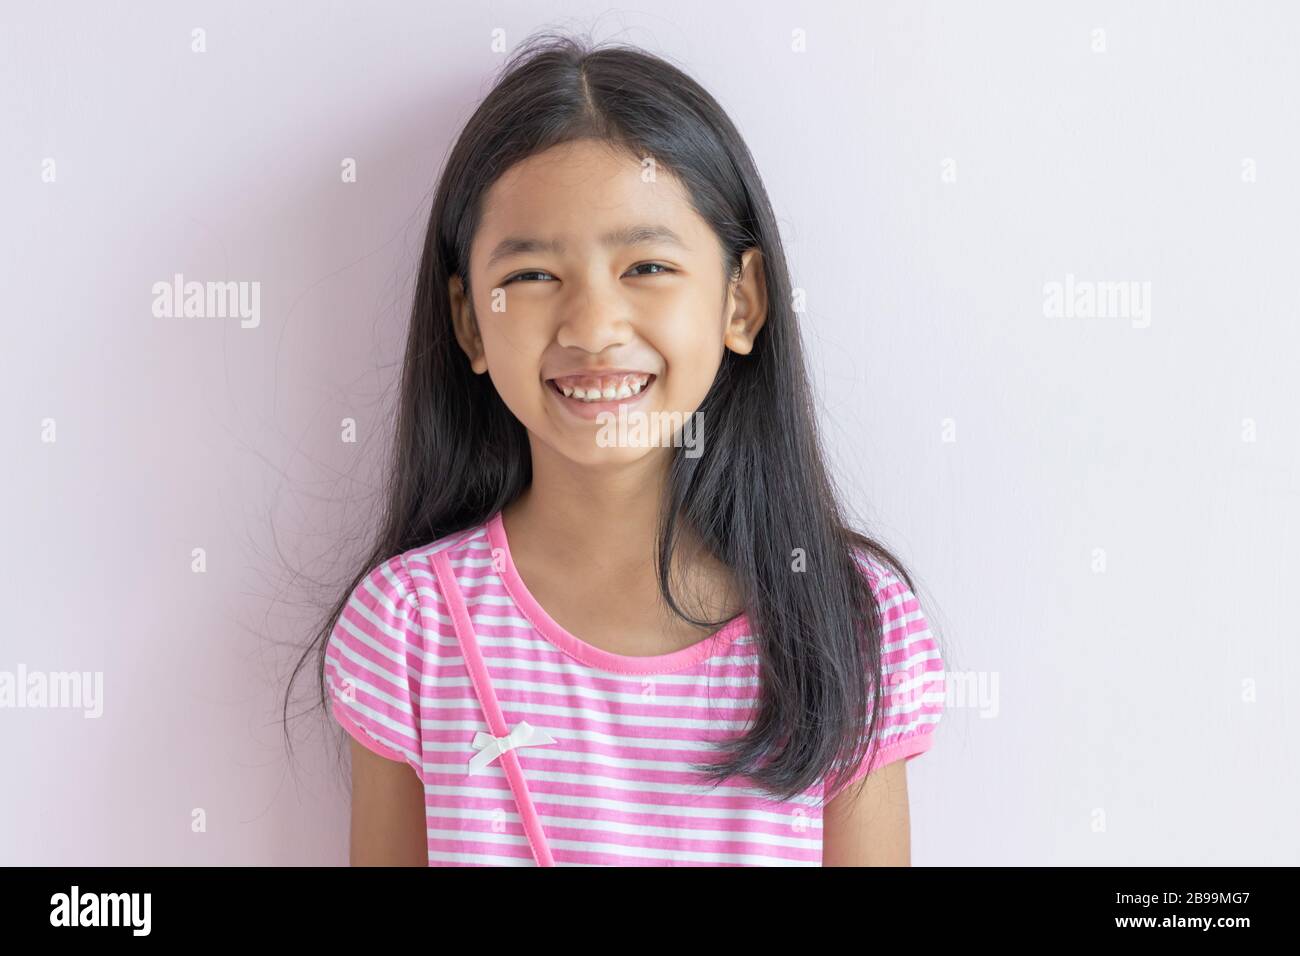 Petite fille asiatique souriante aux couleurs vives. Les enfants portent des robes blanches croisées roses et de longs cheveux noirs. L'enfant regarde vers l'avant et sourit avec plaisir. Portraits Banque D'Images